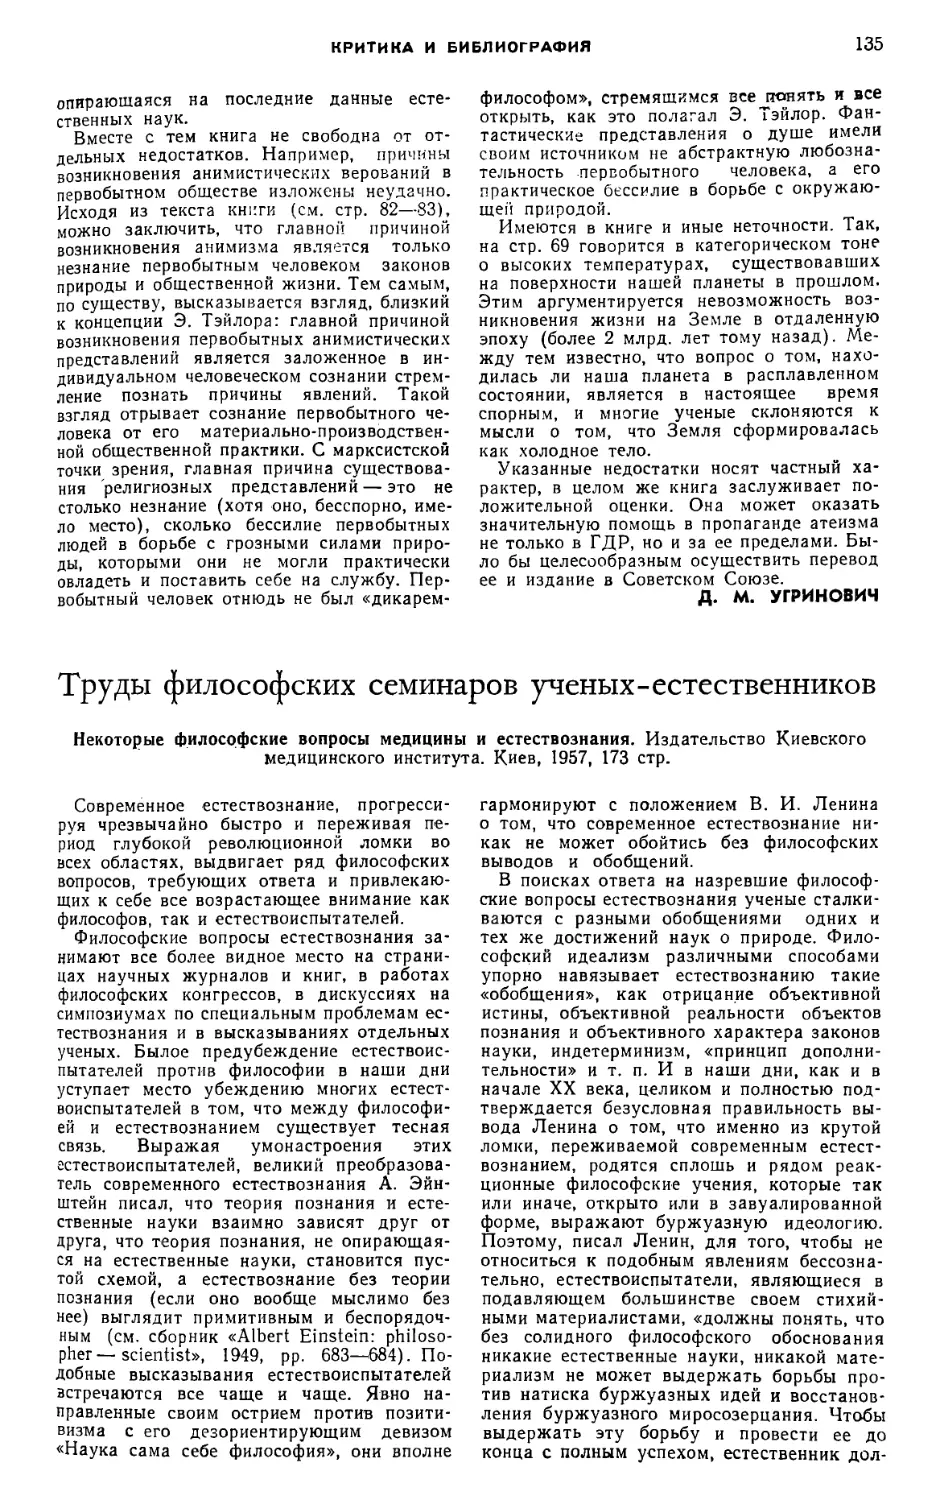 B. М. Каганов — Труды философских семинаров ученых-естественников